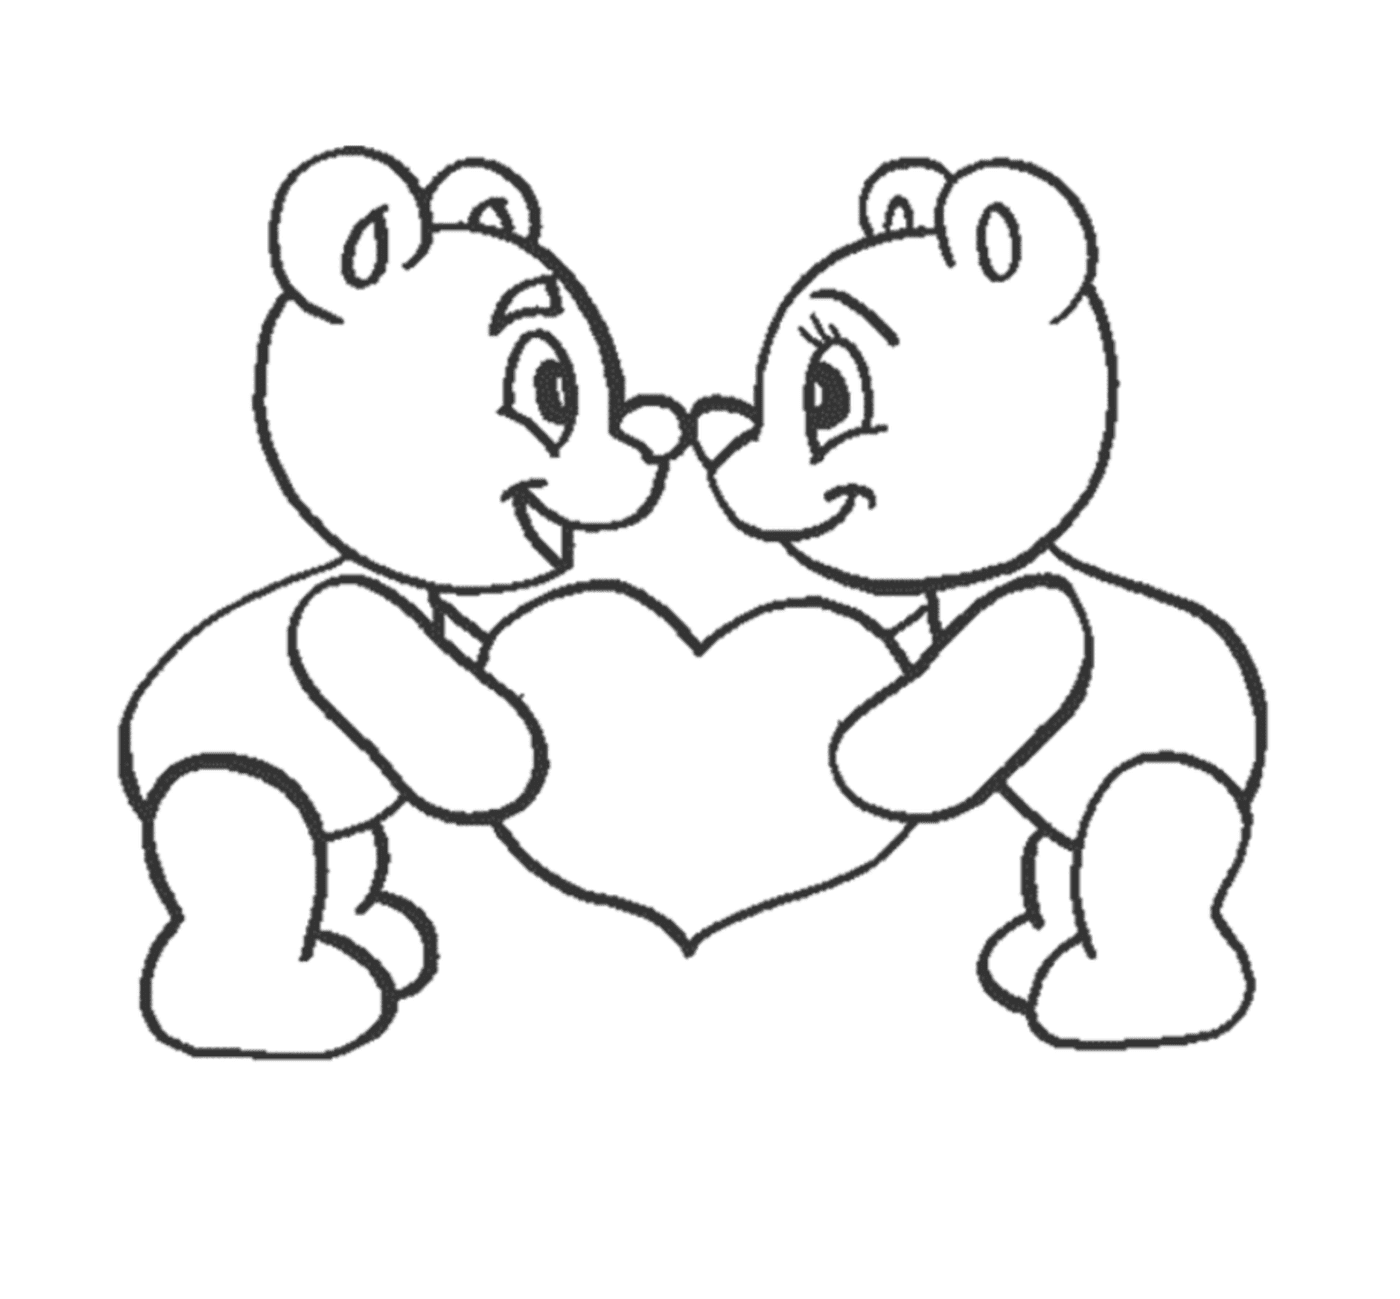  Dois ursos de pelúcia segurando um coração em suas mãos 